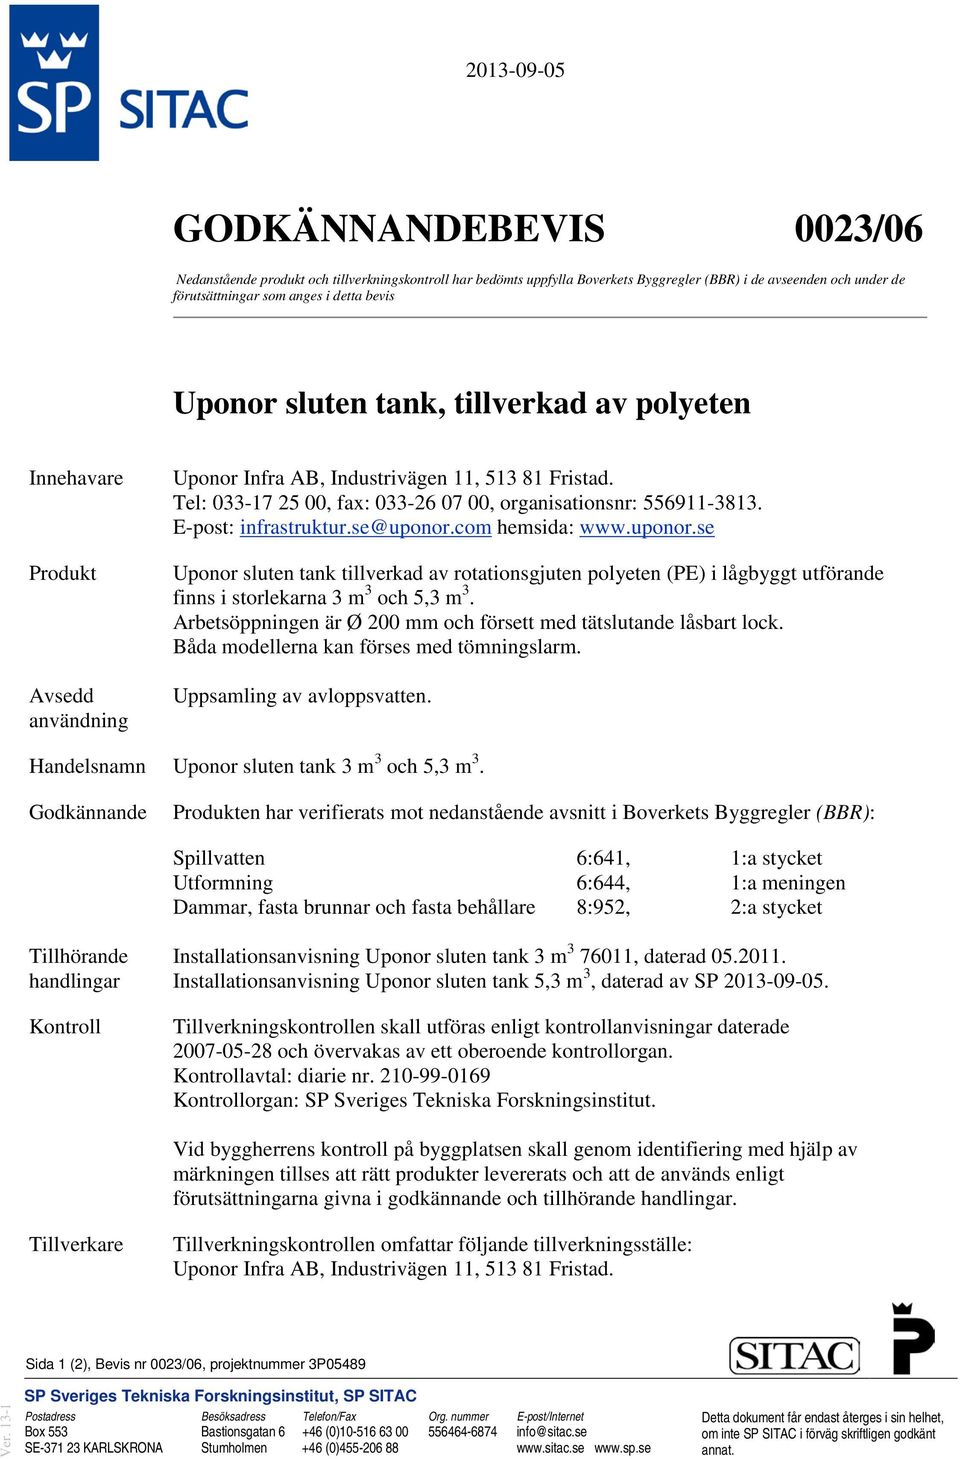 E-post: infrastruktur.se@uponor.com hemsida: www.uponor.se Uponor sluten tank tillverkad av rotationsgjuten polyeten (PE) i lågbyggt utförande finns i storlekarna 3 m 3 och 5,3 m 3.